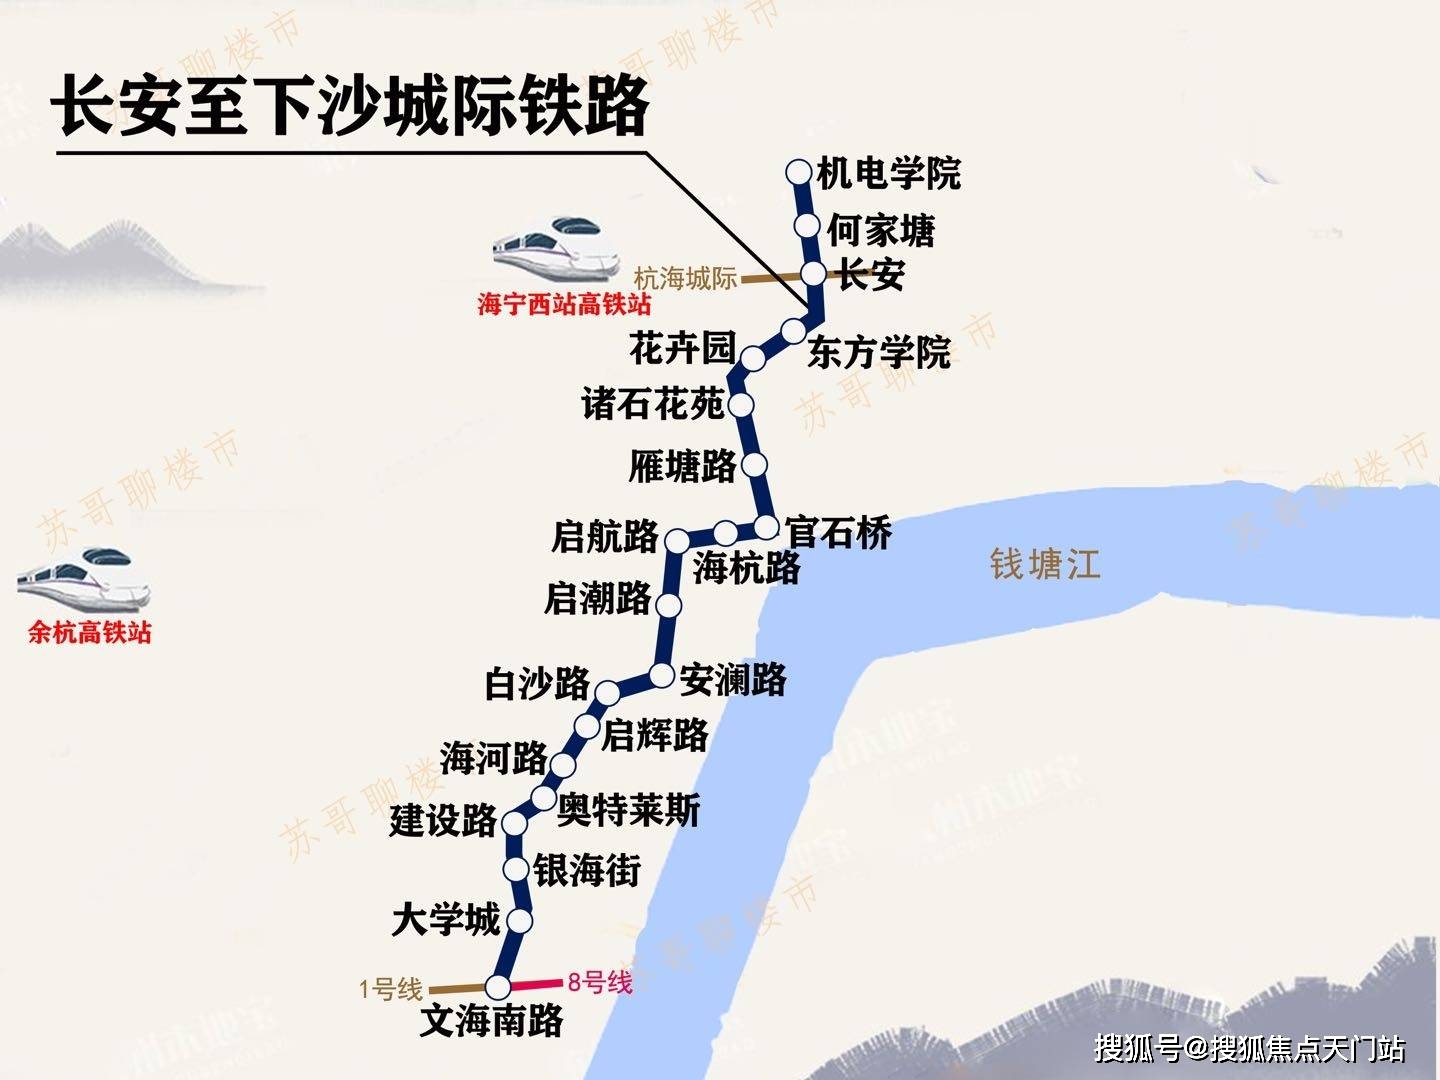 未来地铁9号线无缝对接;起点为余杭高铁站,许村是杭海轻轨在海宁界的